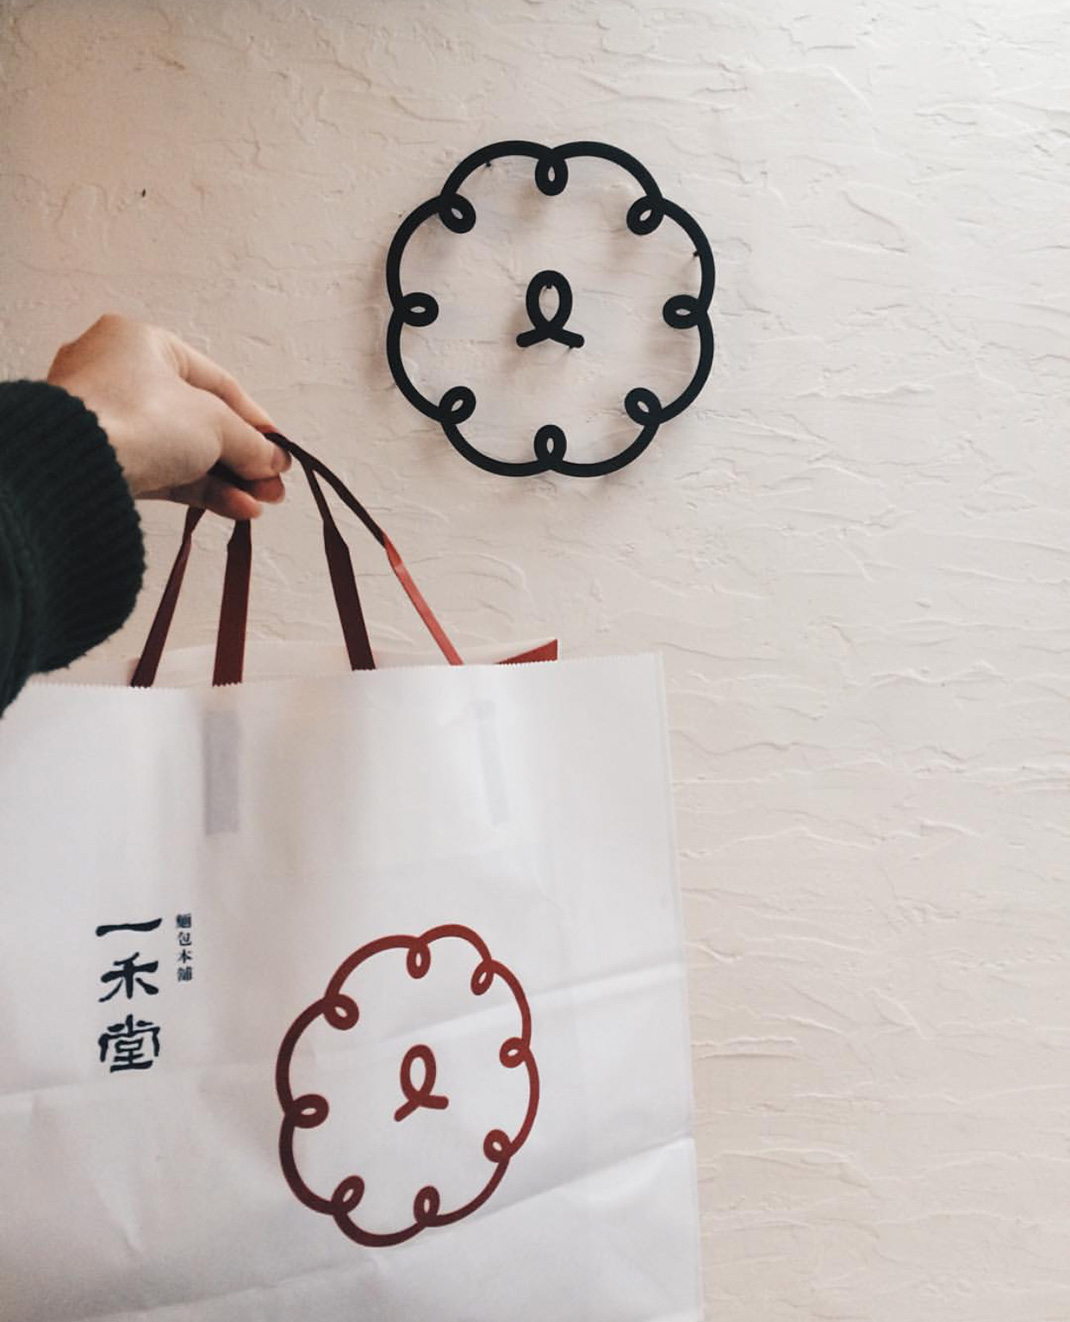 一禾堂 面包本铺 台湾 面包店 字体 包装 插画 logo设计 vi设计 空间设计 视觉餐饮